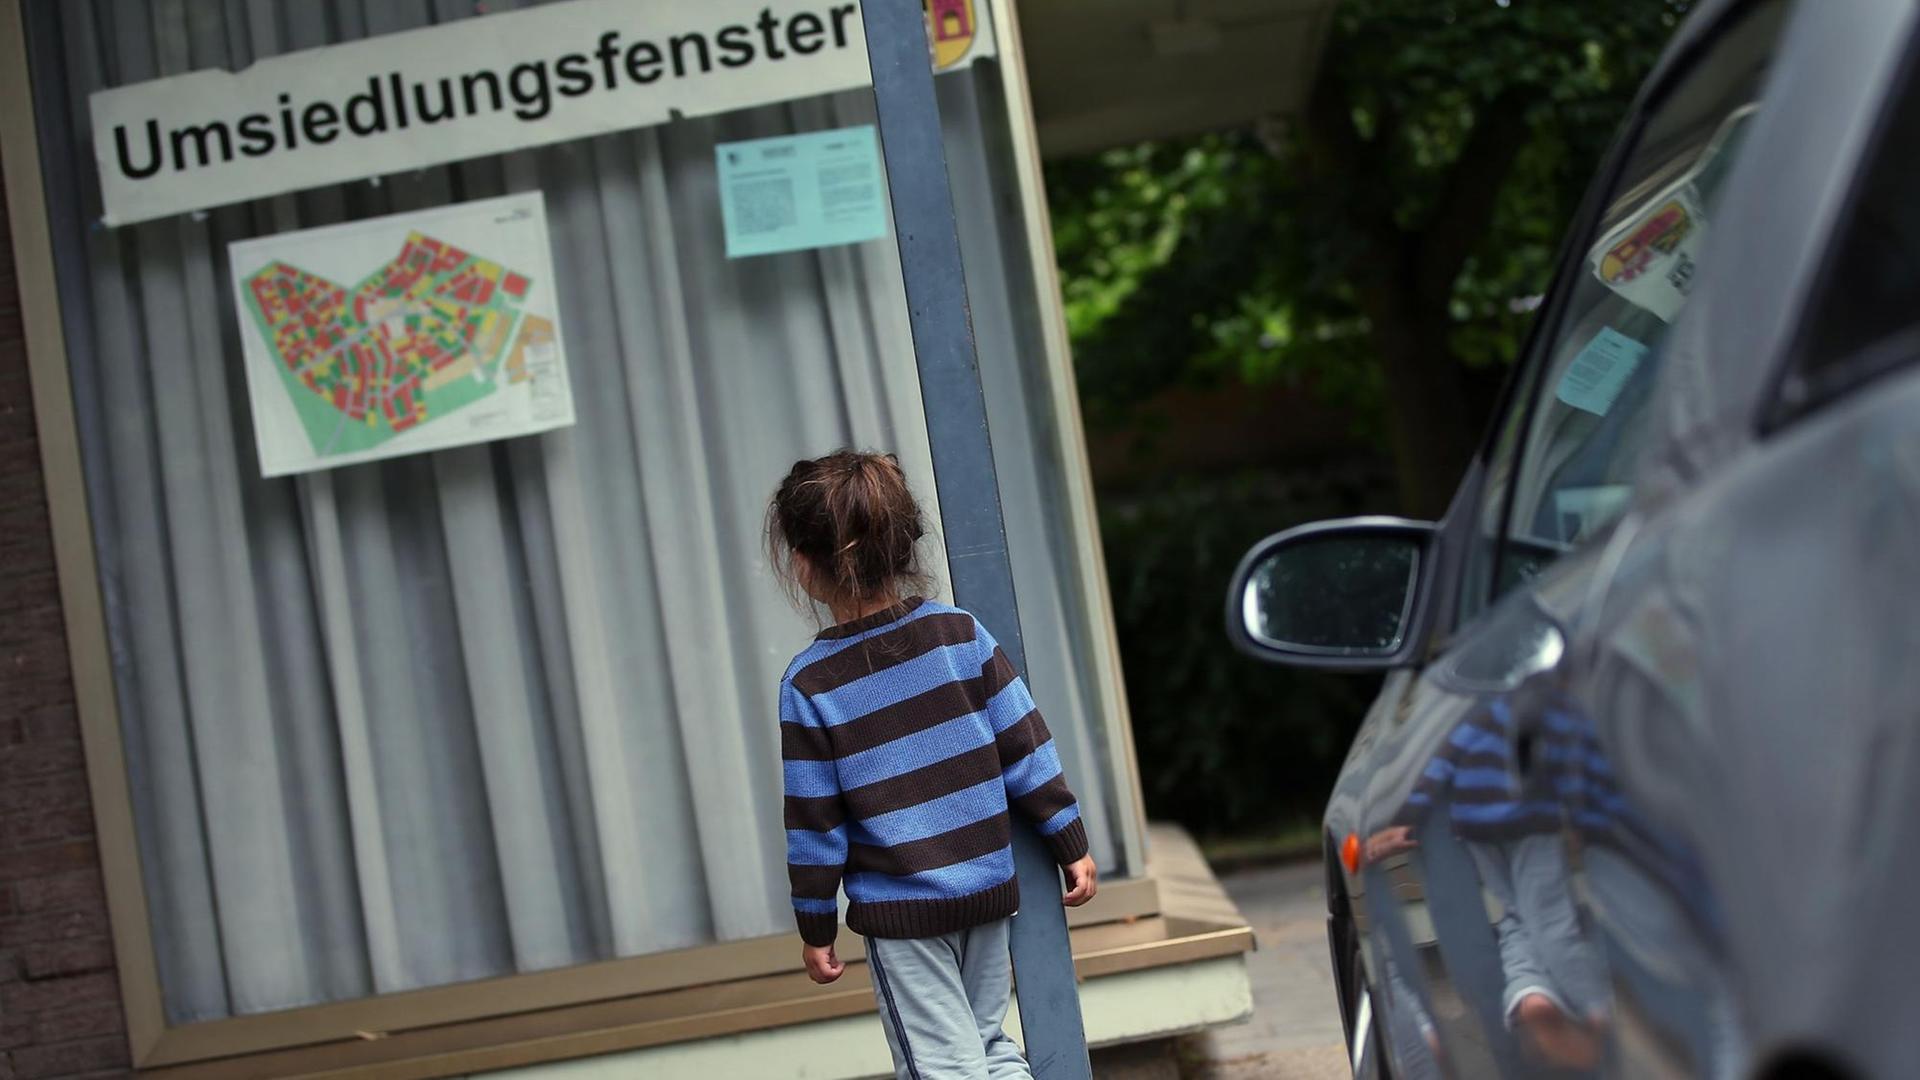 Das Kind einer Flüchtlingsfamilie in Kerpen-Manheim (Nordrhein-Westfalen) vor der Gemeindeverwaltung, die die Umsiedlung der Bewohner im Braunkohletagebau organisiert